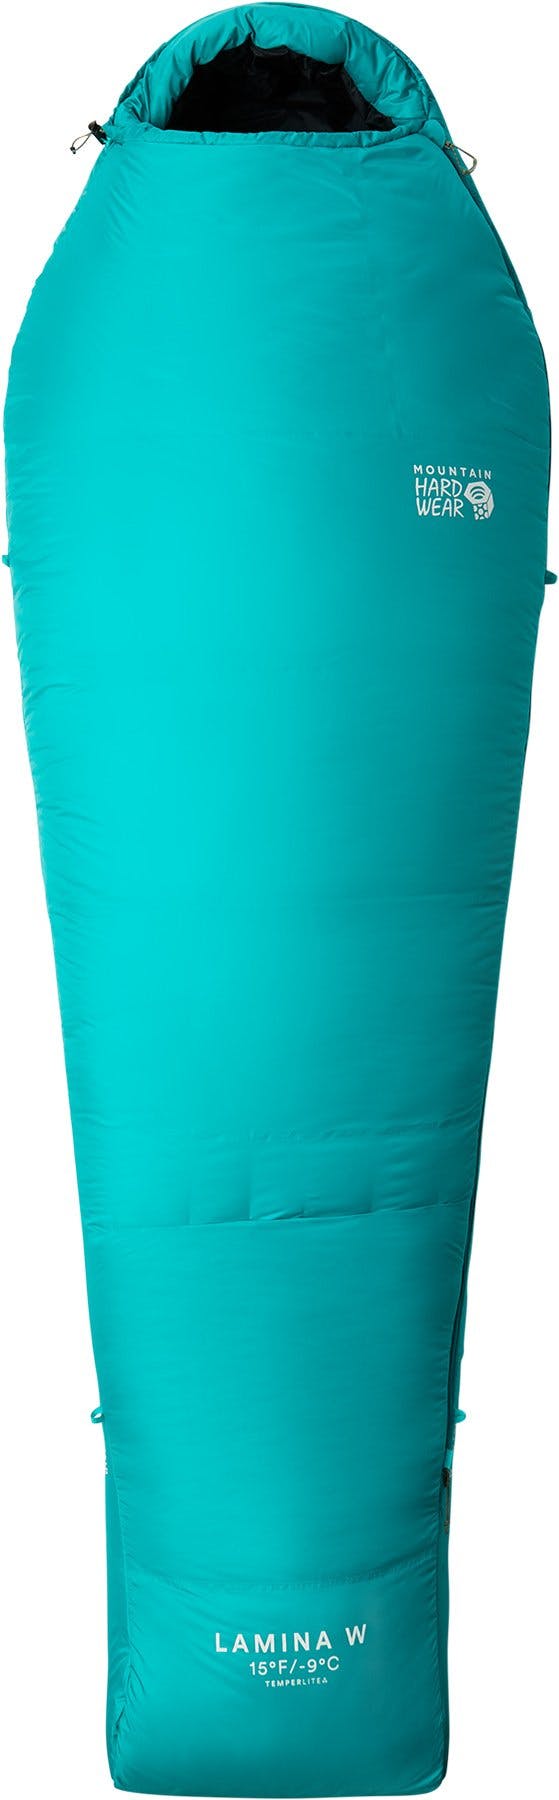 Image de produit pour Sac de couchage Lamina 15°F/-9°C - Régulier - Femme